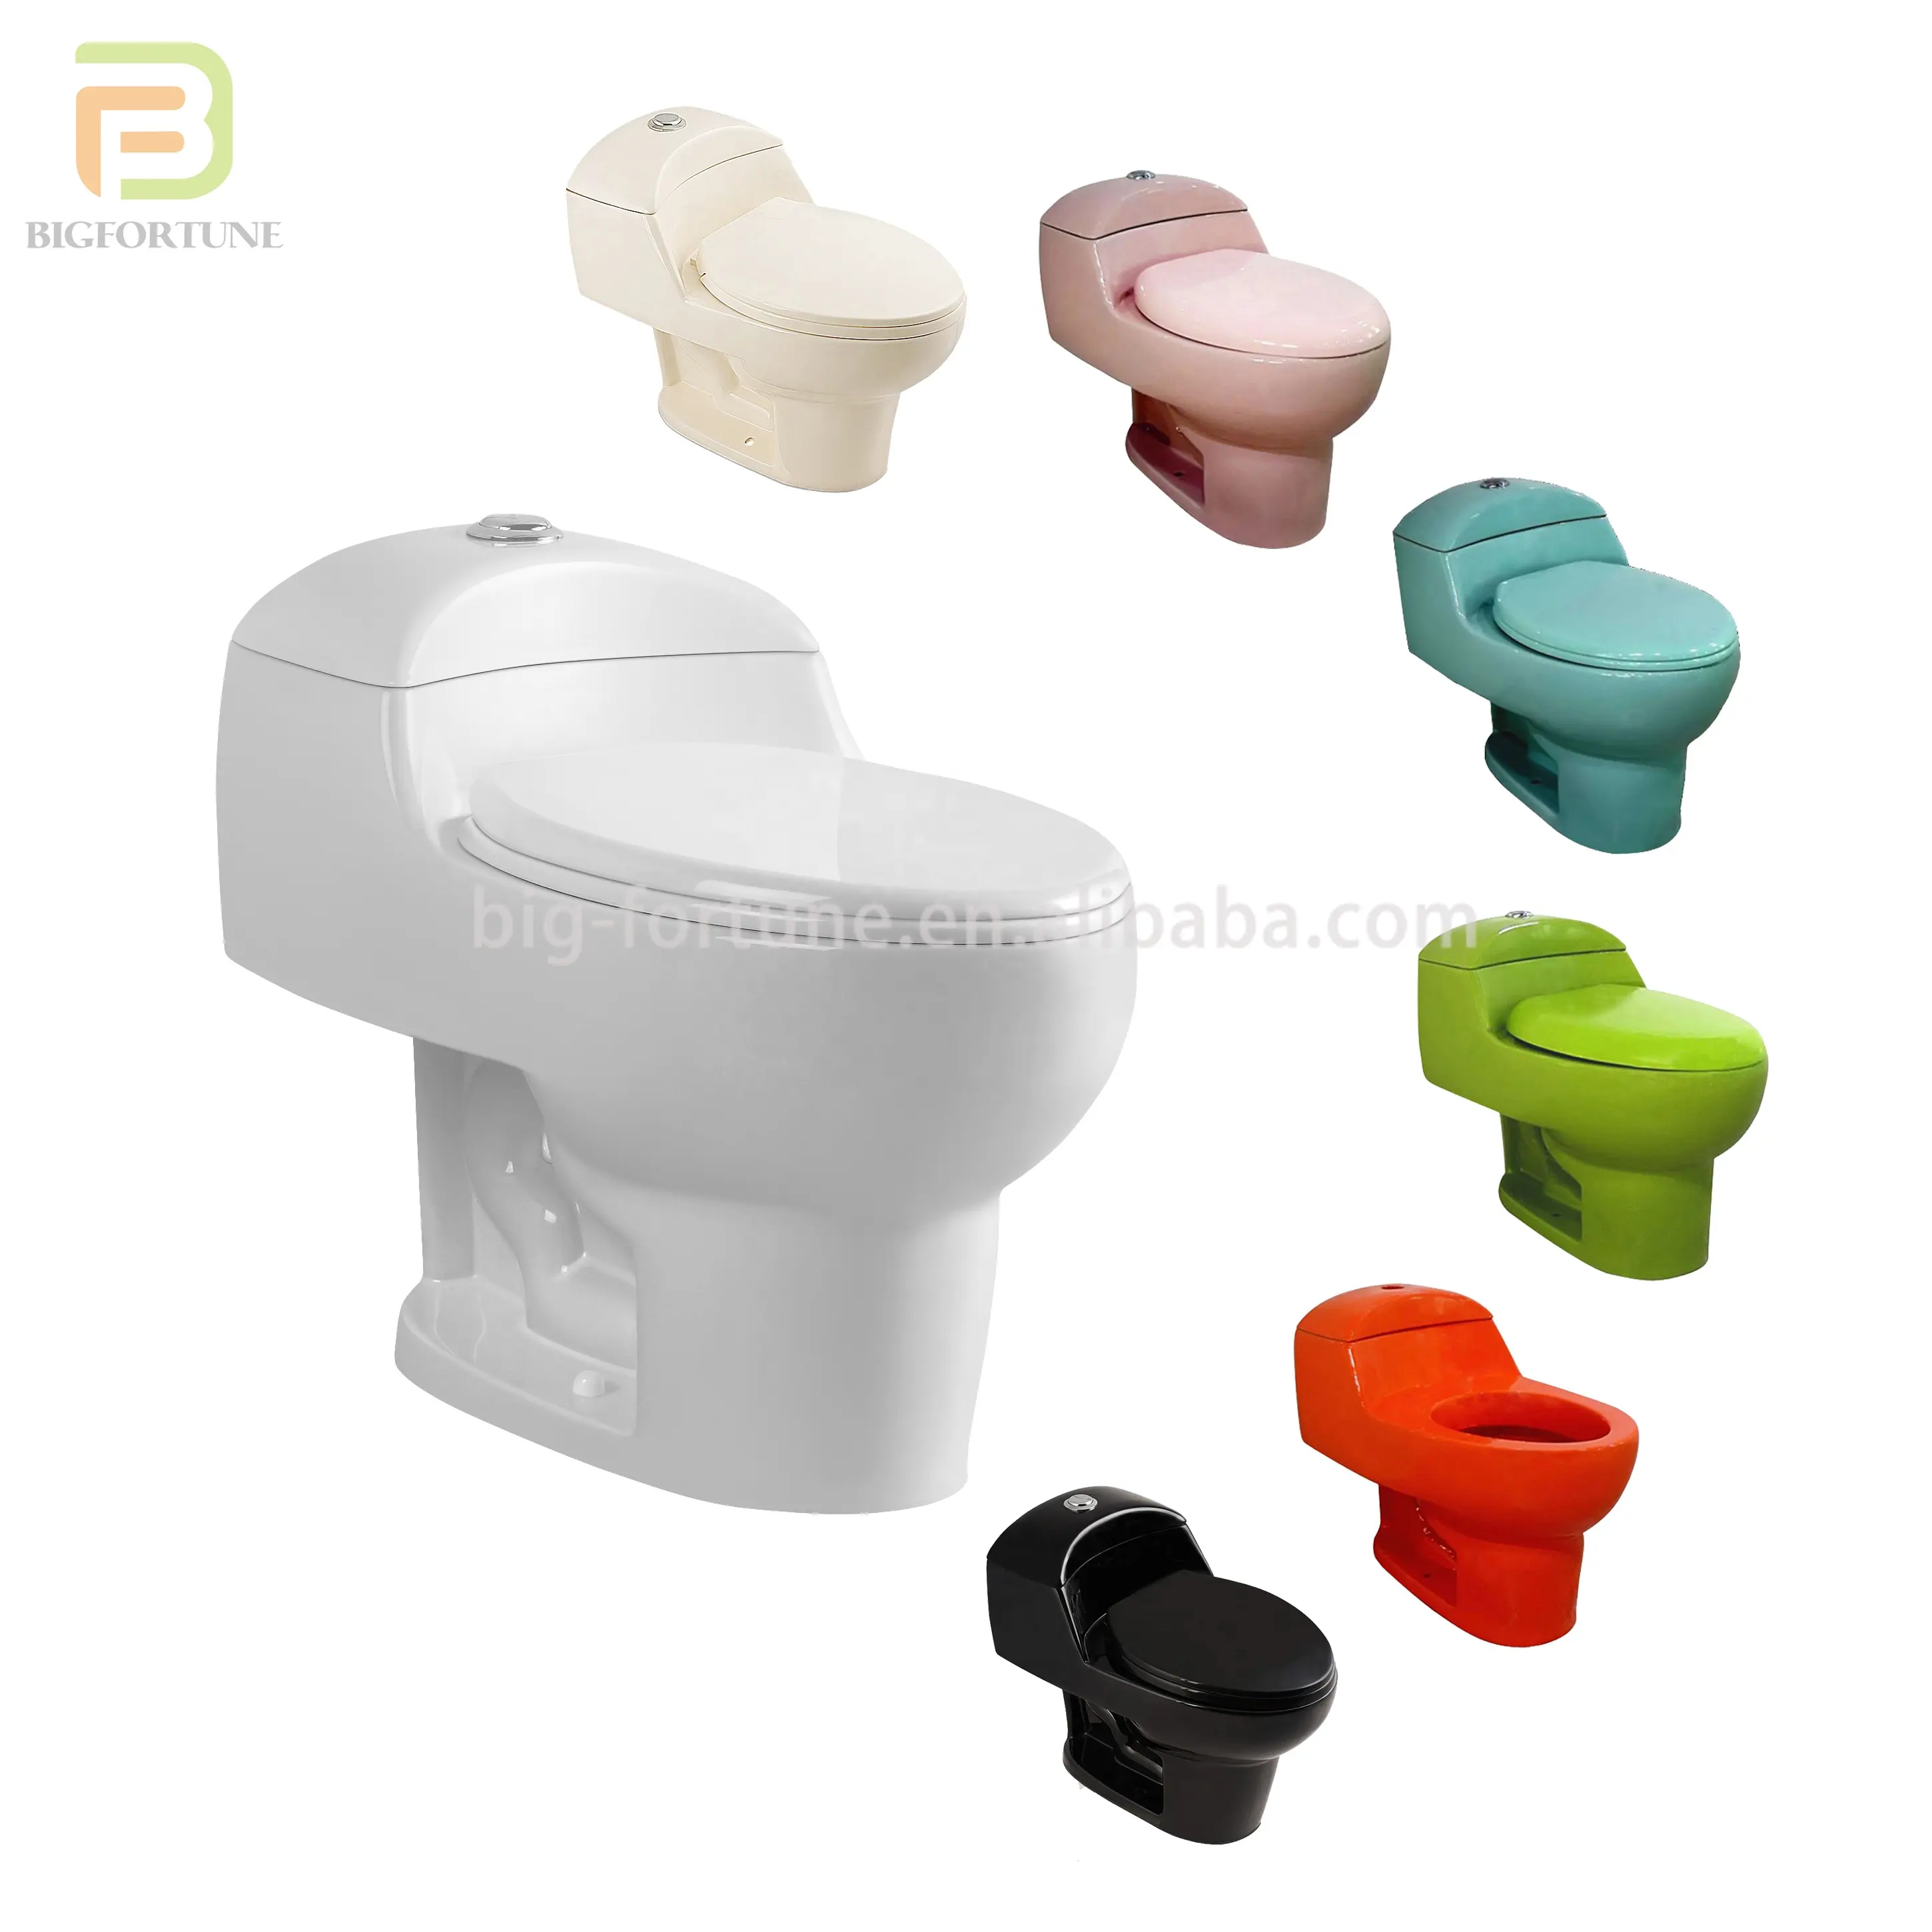 Hot Selling Populaire Groothandel Goedkope Moderne Multicolor Sifonische Inodoro Badkamer Toiletpot Keramisch Toilet